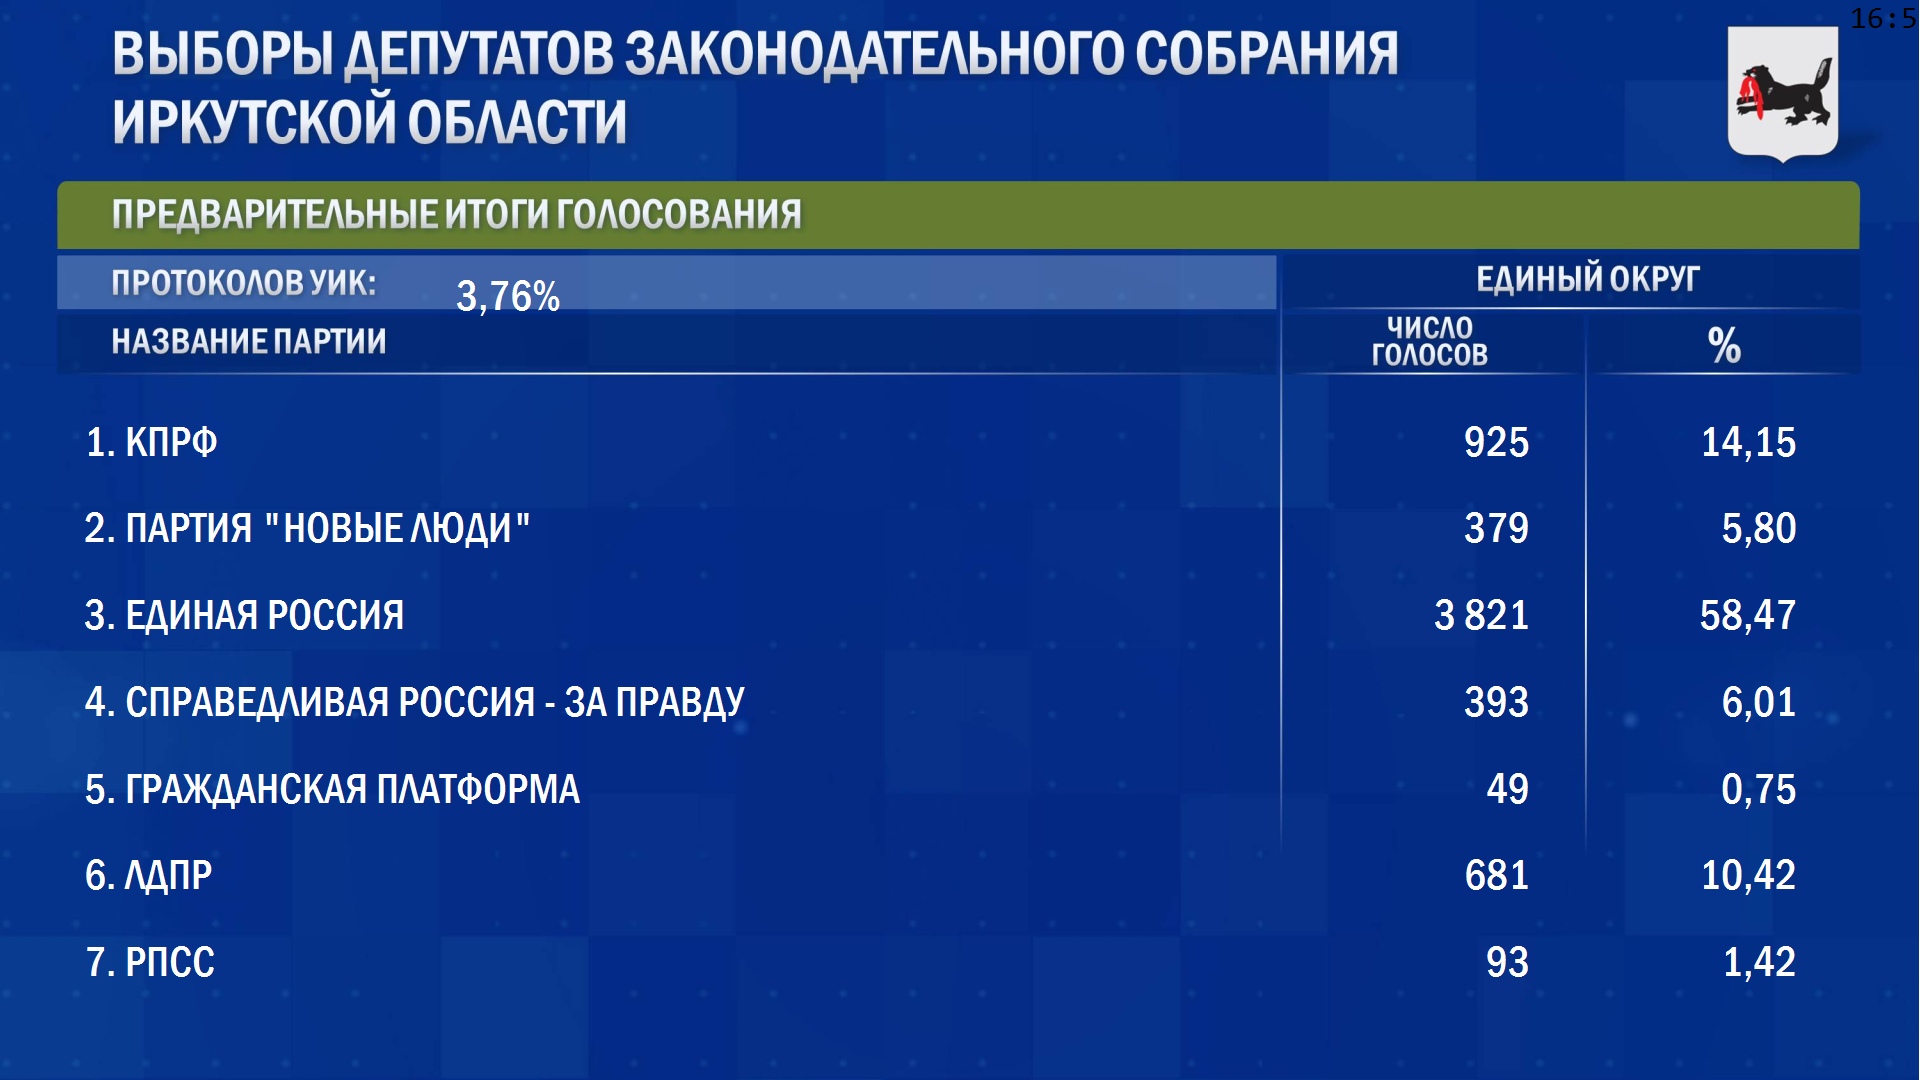 ЦИК РФ опубликовала предварительные итоги голосования на выборах в ЗС Иркутской области после обработки 3,7 % протоколов